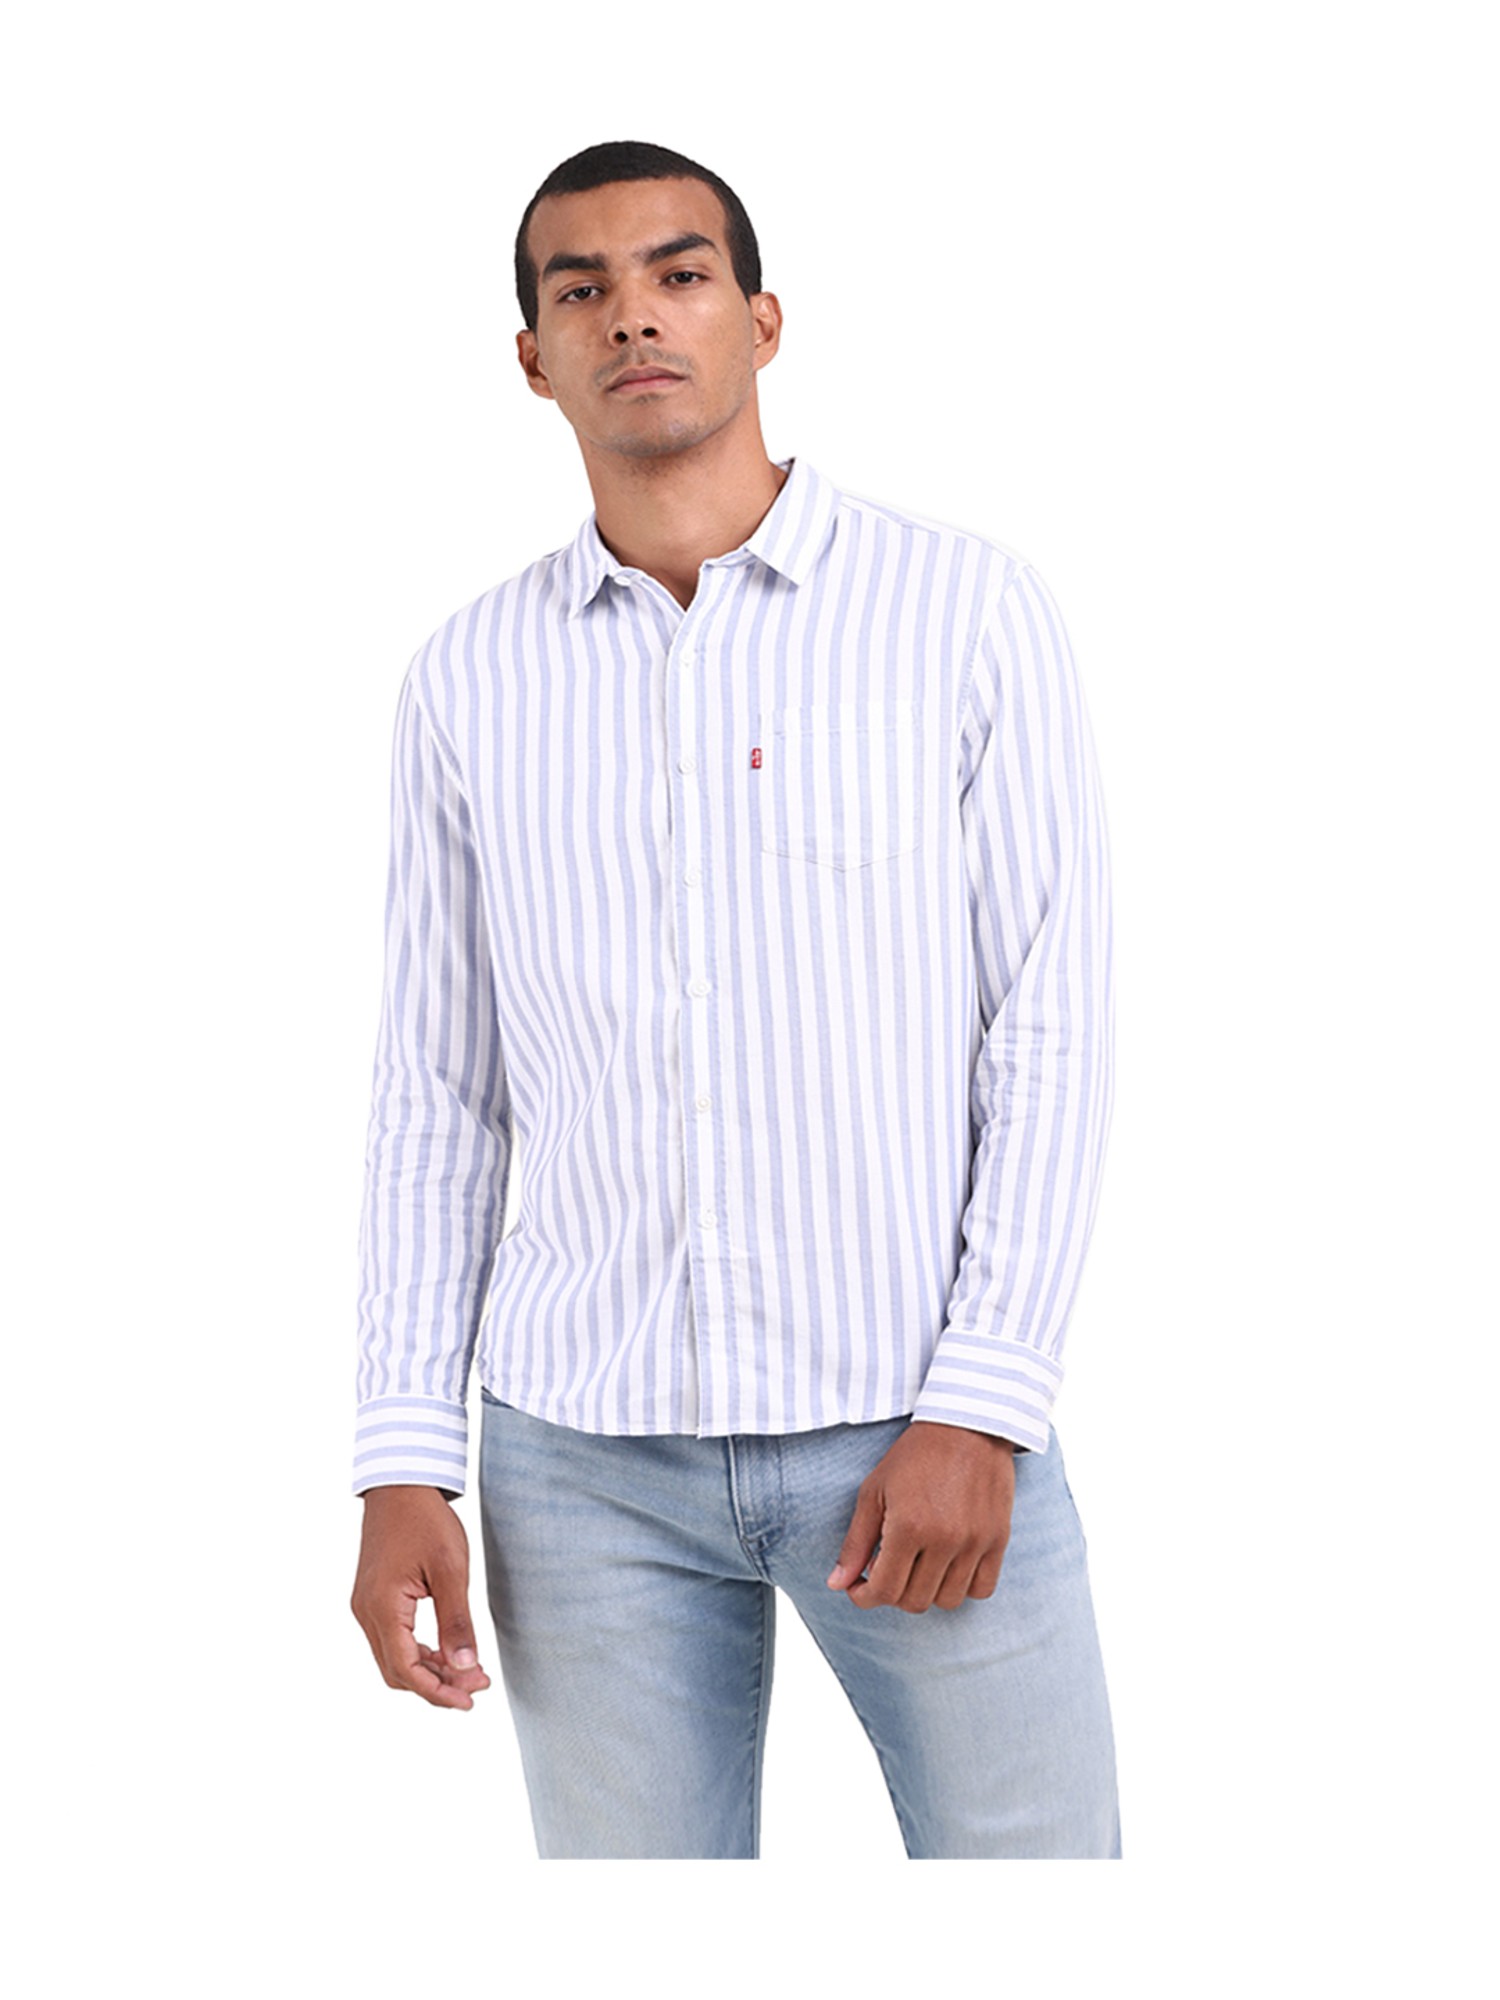 Buy Levi'S White & Blue Slim Fit Striped Shirt For Men Online @ Tata Cliq